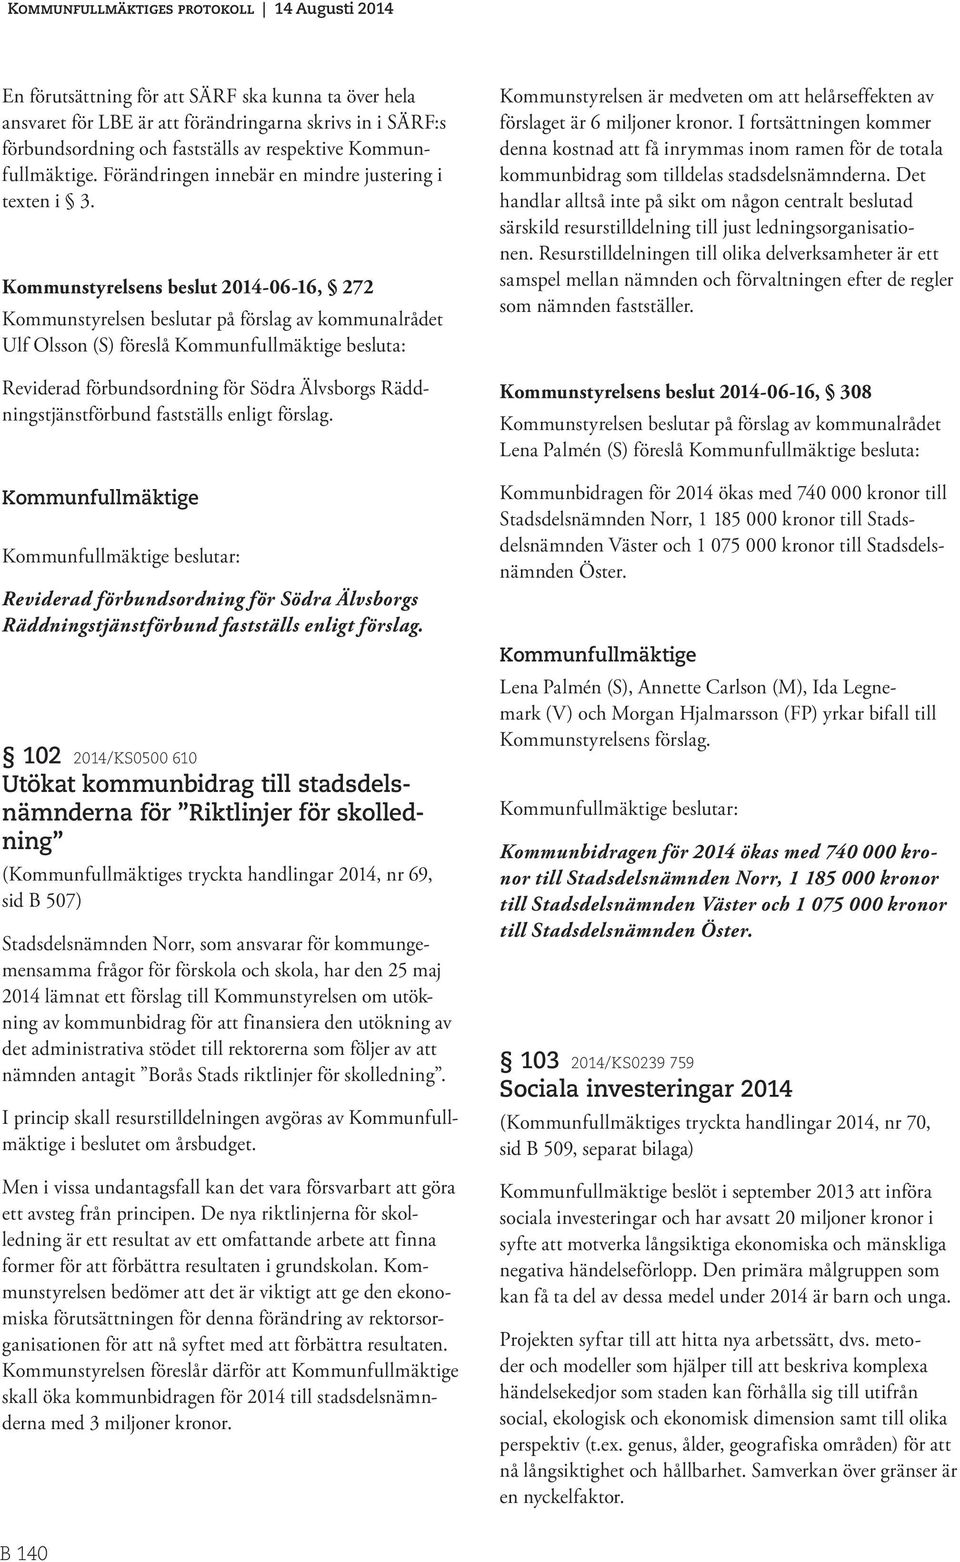 Kommunstyrelsens beslut 2014-06-16, 272 Kommunstyrelsen beslutar på förslag av kommunalrådet Ulf Olsson (S) föreslå Kommunfullmäktige besluta: Reviderad förbundsordning för Södra Älvsborgs